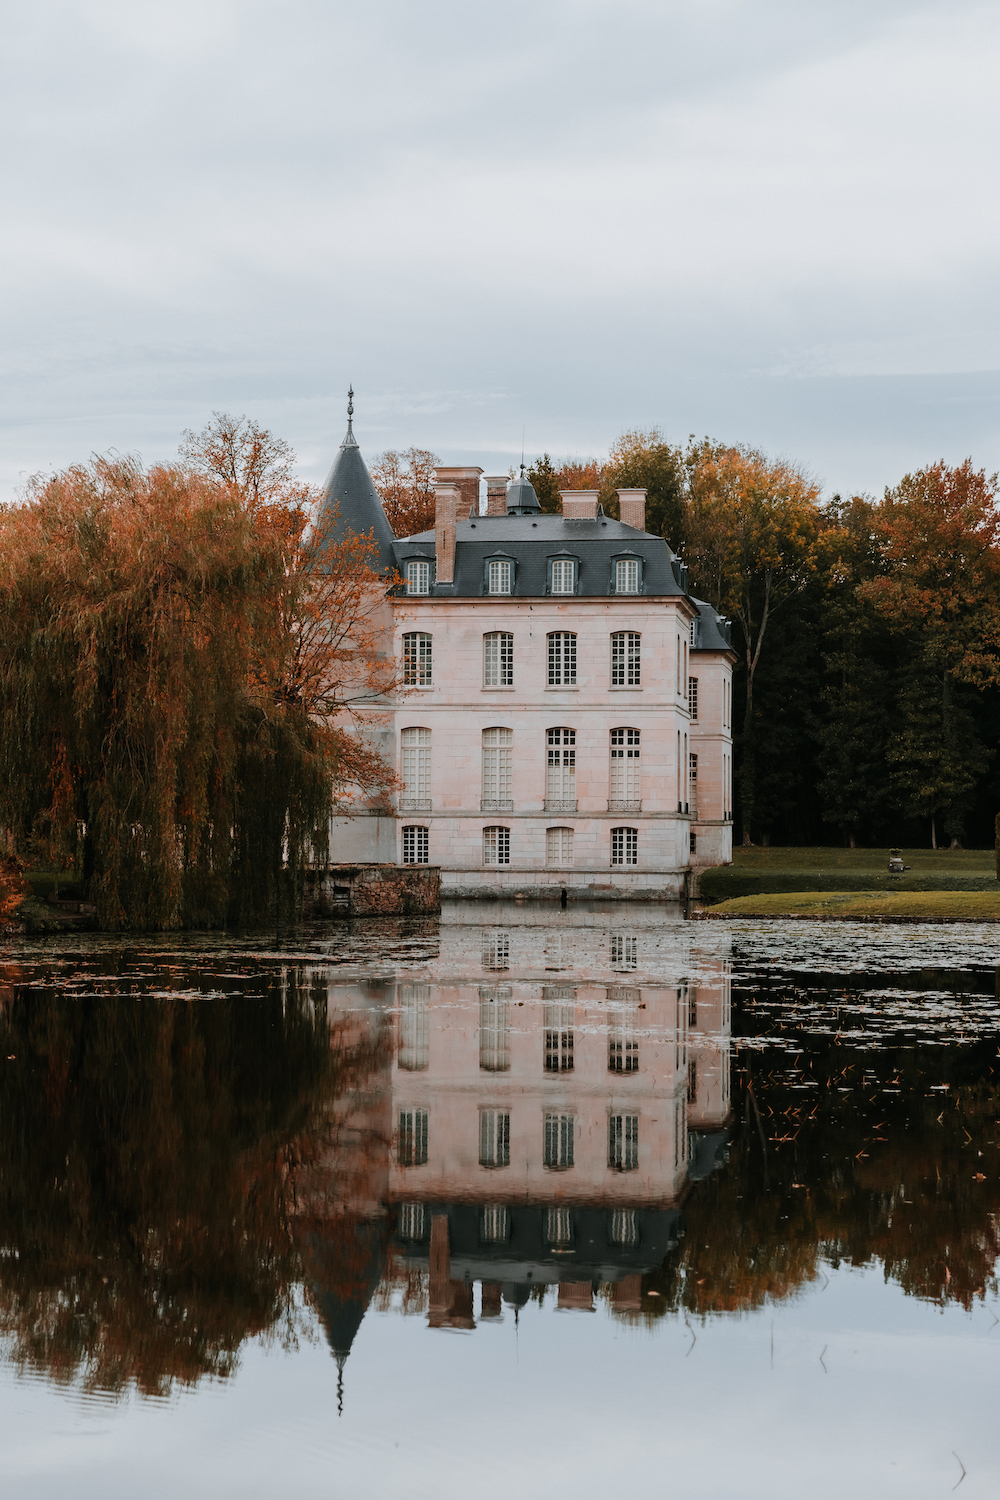 Mariage d'automne dans l'Oise // Crédit - Margot Mchn